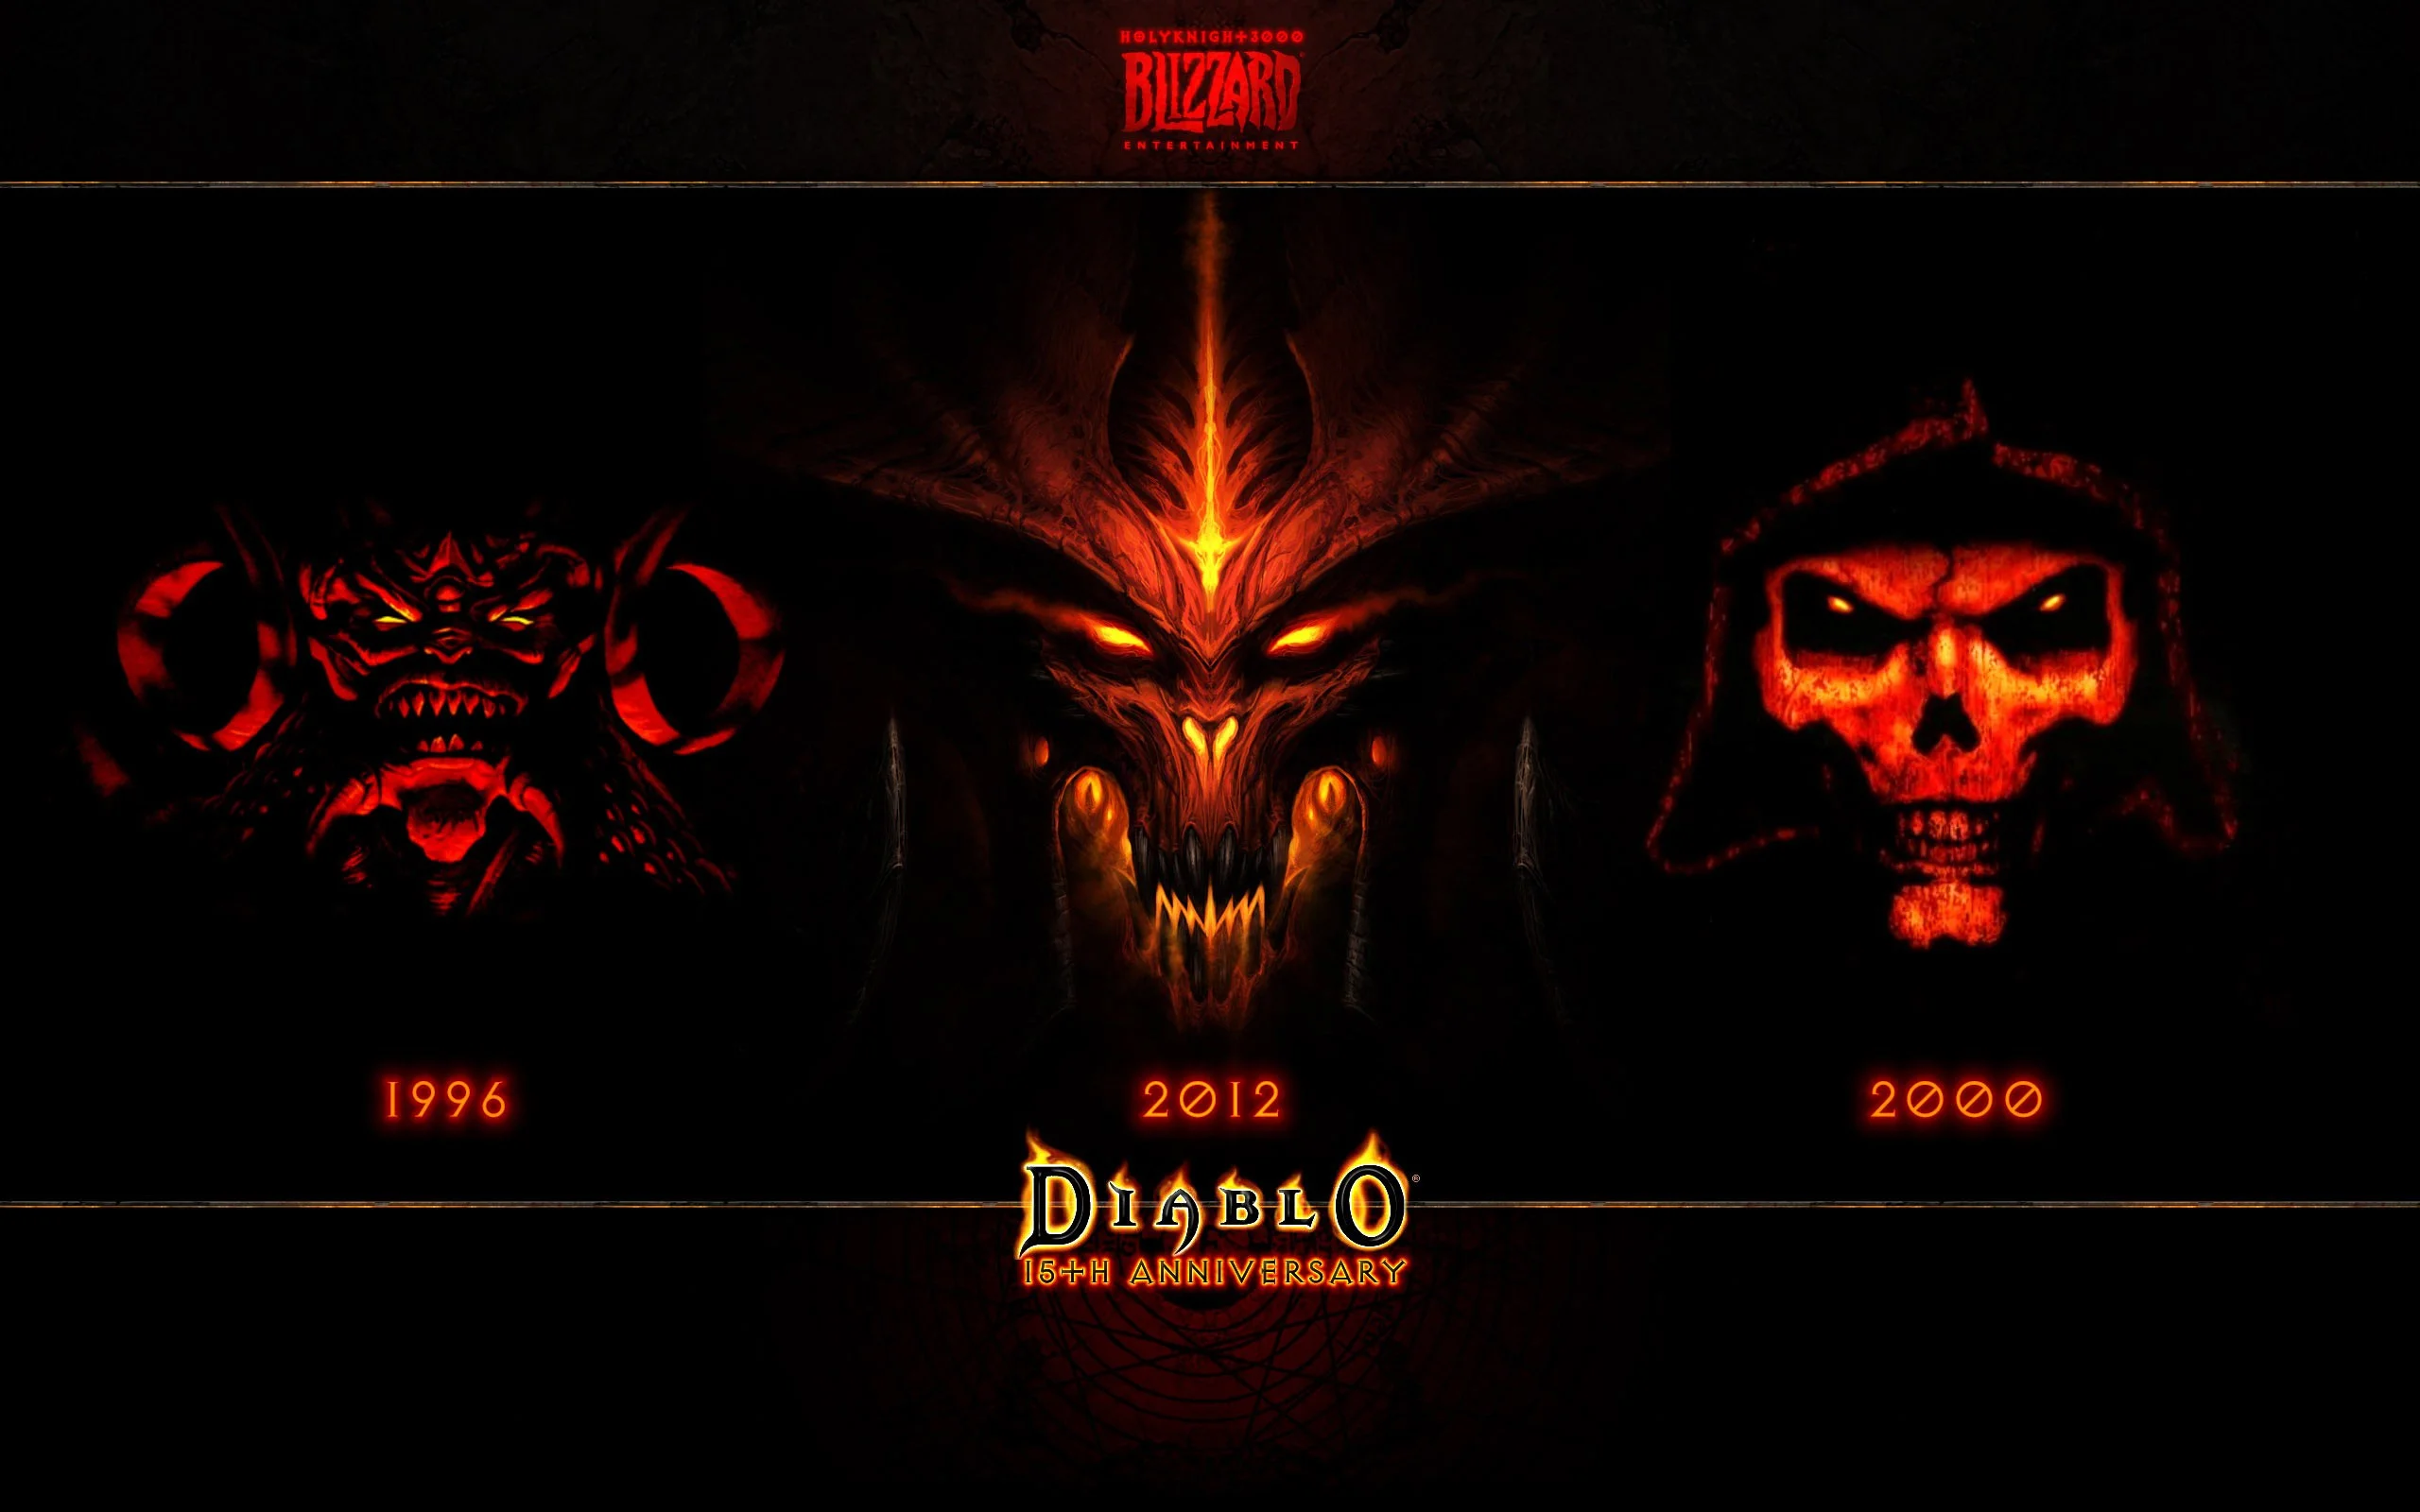 Пошаговая первая Diablo, закуска сердцами врагов в Diablo II, Diablo III как MMO. Обо всем этом, и многом, многом другом в книге «Stay Awhile and Listen», написанной Дэвидом Крэддоком (David L. Craddock).